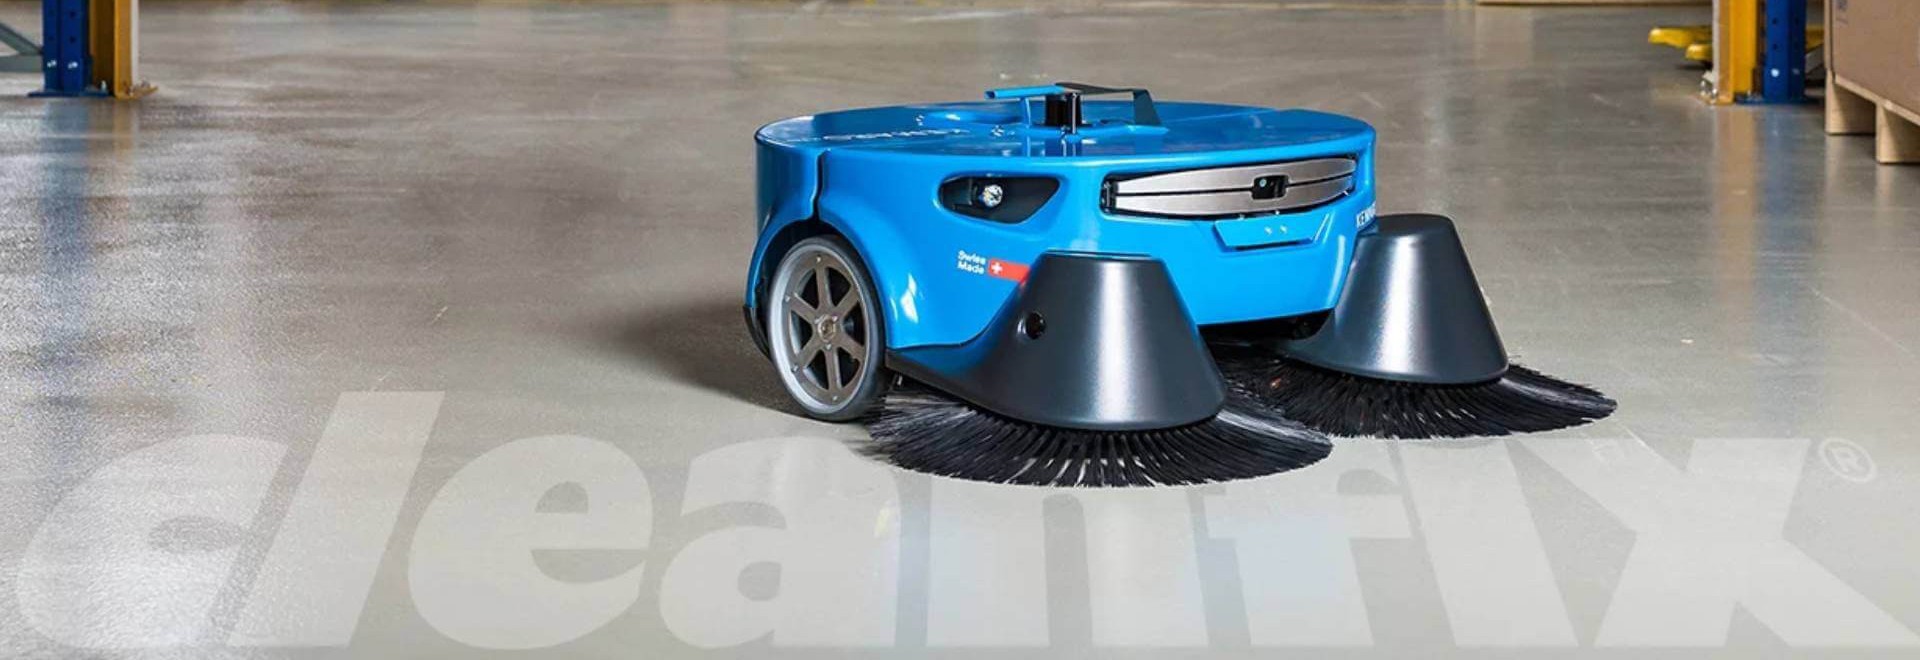 Sweeper Vacuum Robot